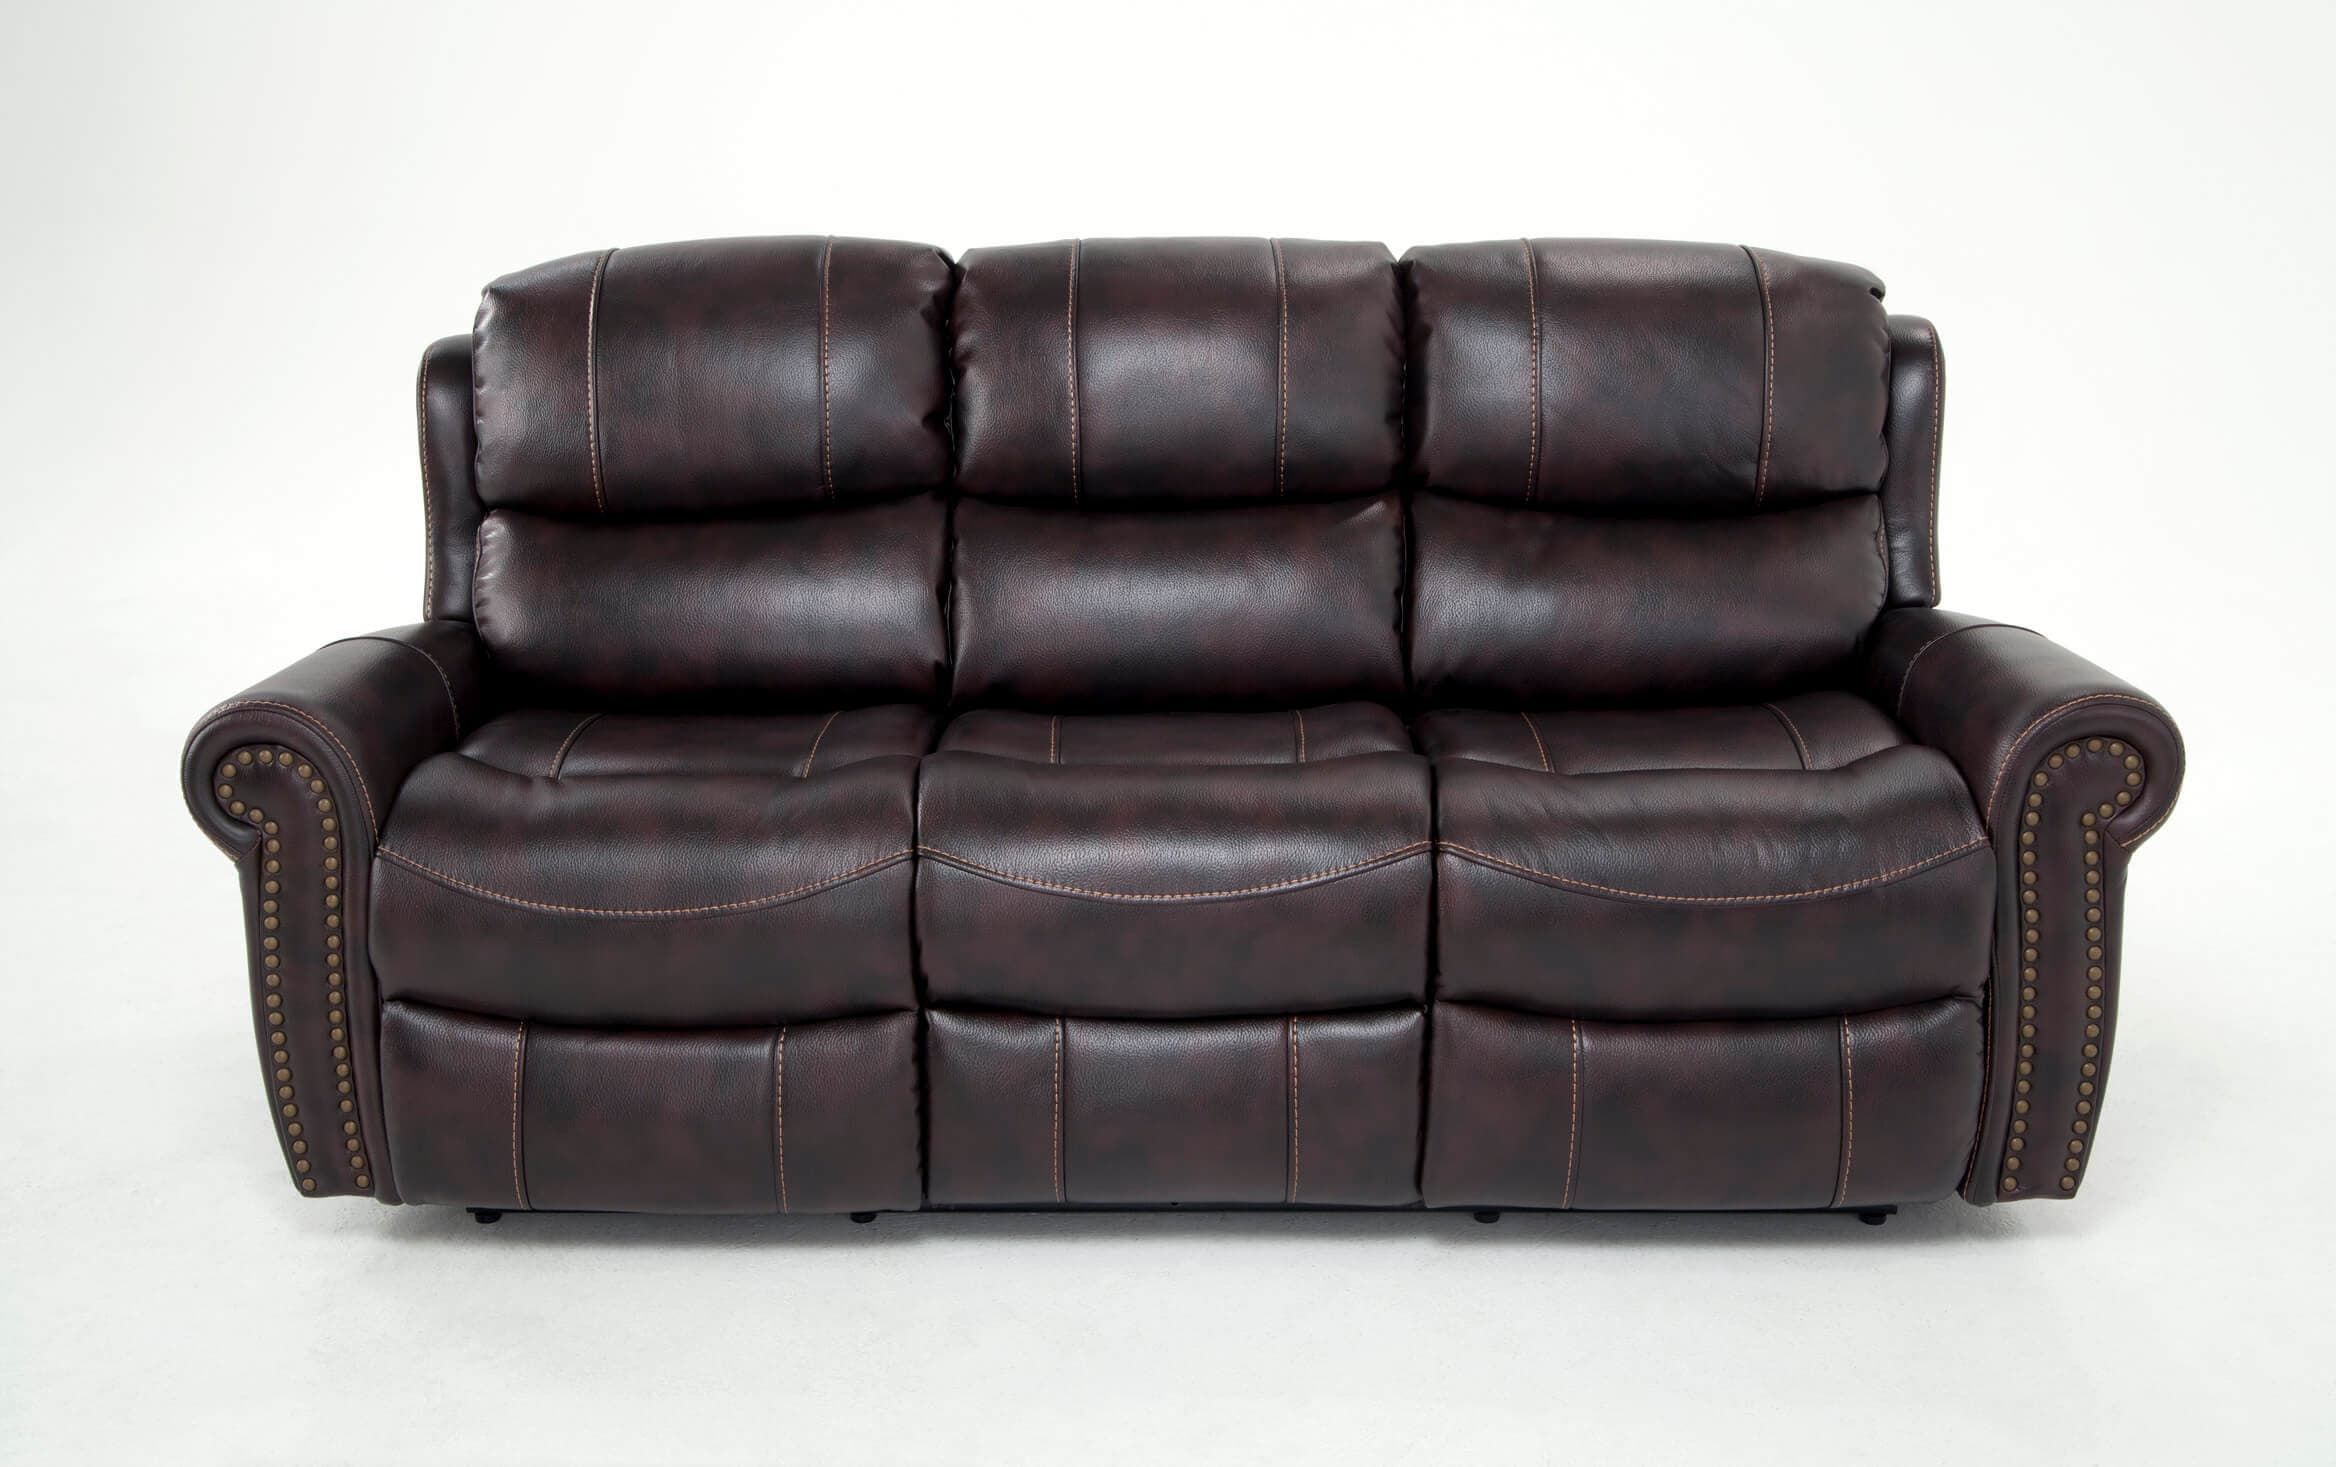 Bobs Furniture Leather Sofa : Trailblazer Gray Leather For Trailblazer Gray Leather Power Reclining Sofas (View 2 of 15)